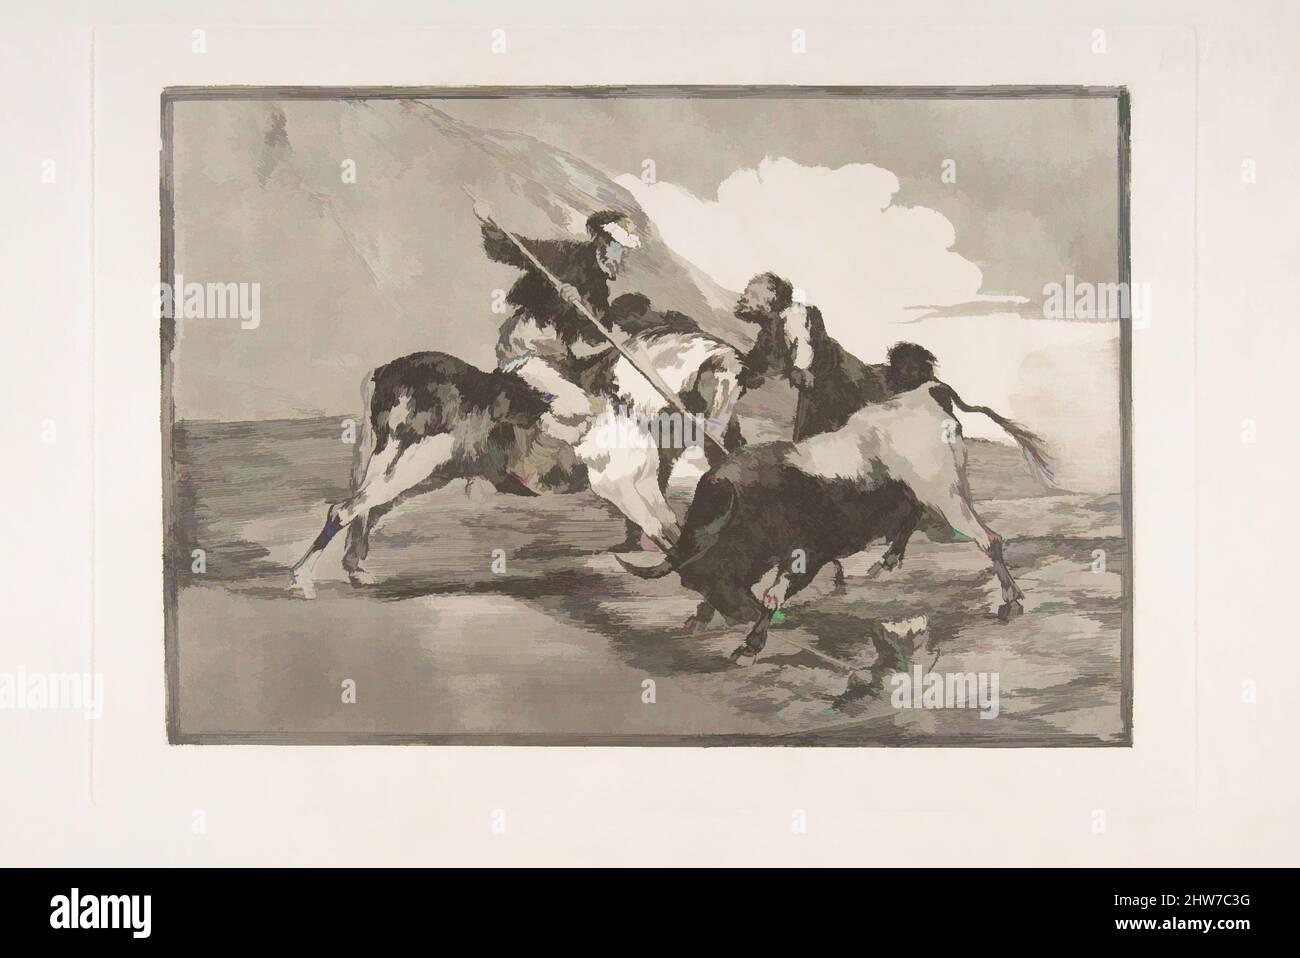 Art inspiré par la planche 1 de 'la Tauromaquia': La façon dont les anciens Espagnols chassaient des taureaux à cheval dans le pays ouvert, 1816, Etching, l'aquatint bruni, et le point sec, Plaque : 9 3/4 x 13 3/4 po. (24,8 x 35 cm), Prints, Goya (Francisco de Goya y Lucientes) (espagnol, oeuvres classiques modernisées par Artotop avec une touche de modernité. Formes, couleur et valeur, impact visuel accrocheur sur l'art émotions par la liberté d'œuvres d'art d'une manière contemporaine. Un message intemporel qui cherche une nouvelle direction créative. Artistes qui se tournent vers le support numérique et créent le NFT Artotop Banque D'Images